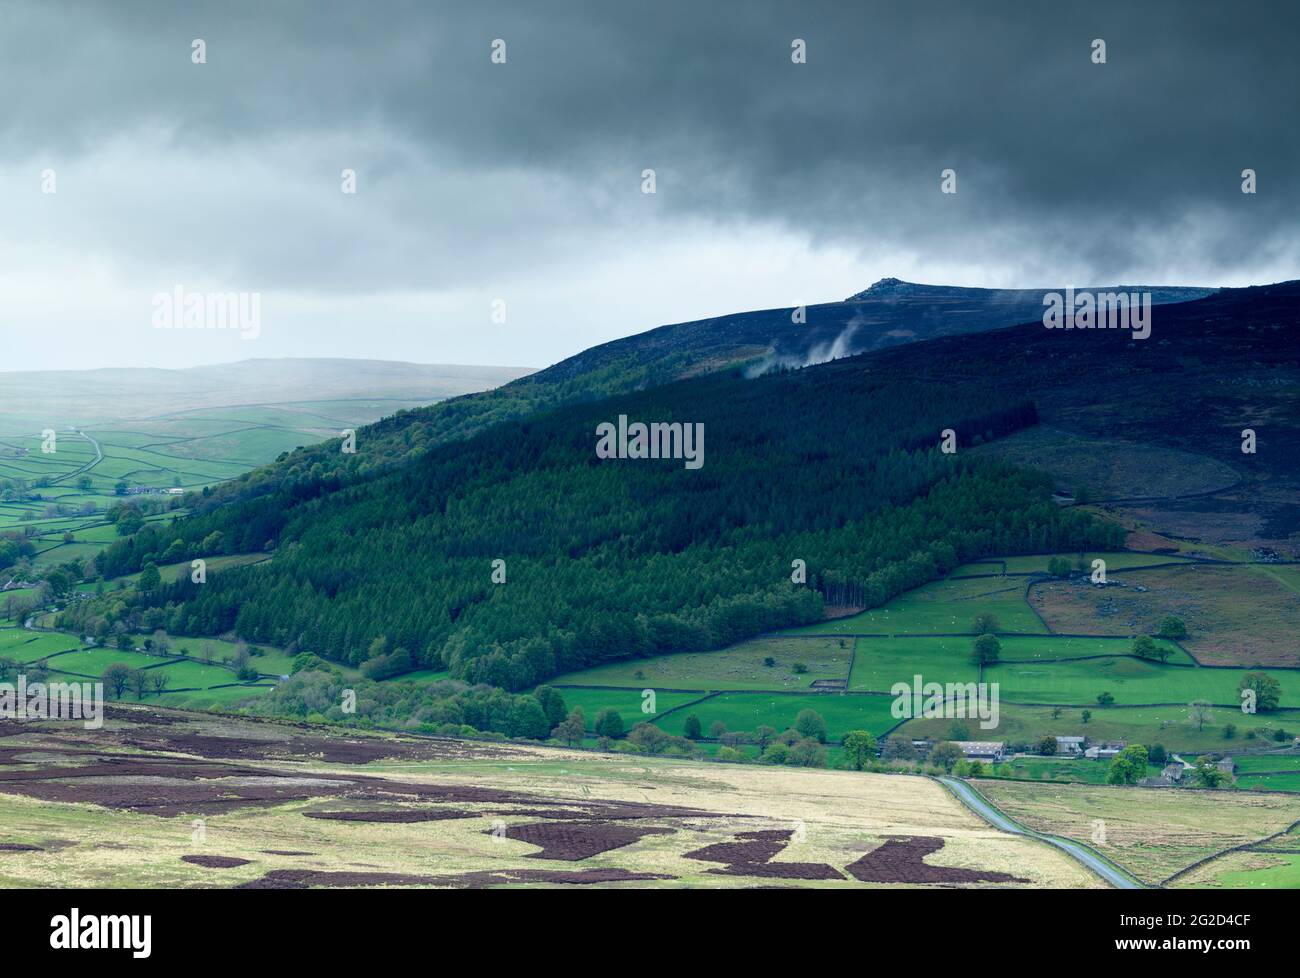 Paesaggio montano panoramico (Wharfedale Valley, Simon's Seat picco, alte campane, pioggia che cade su colline, cielo nuvoloso scuro) - Yorkshire Dales, Inghilterra, Regno Unito. Foto Stock